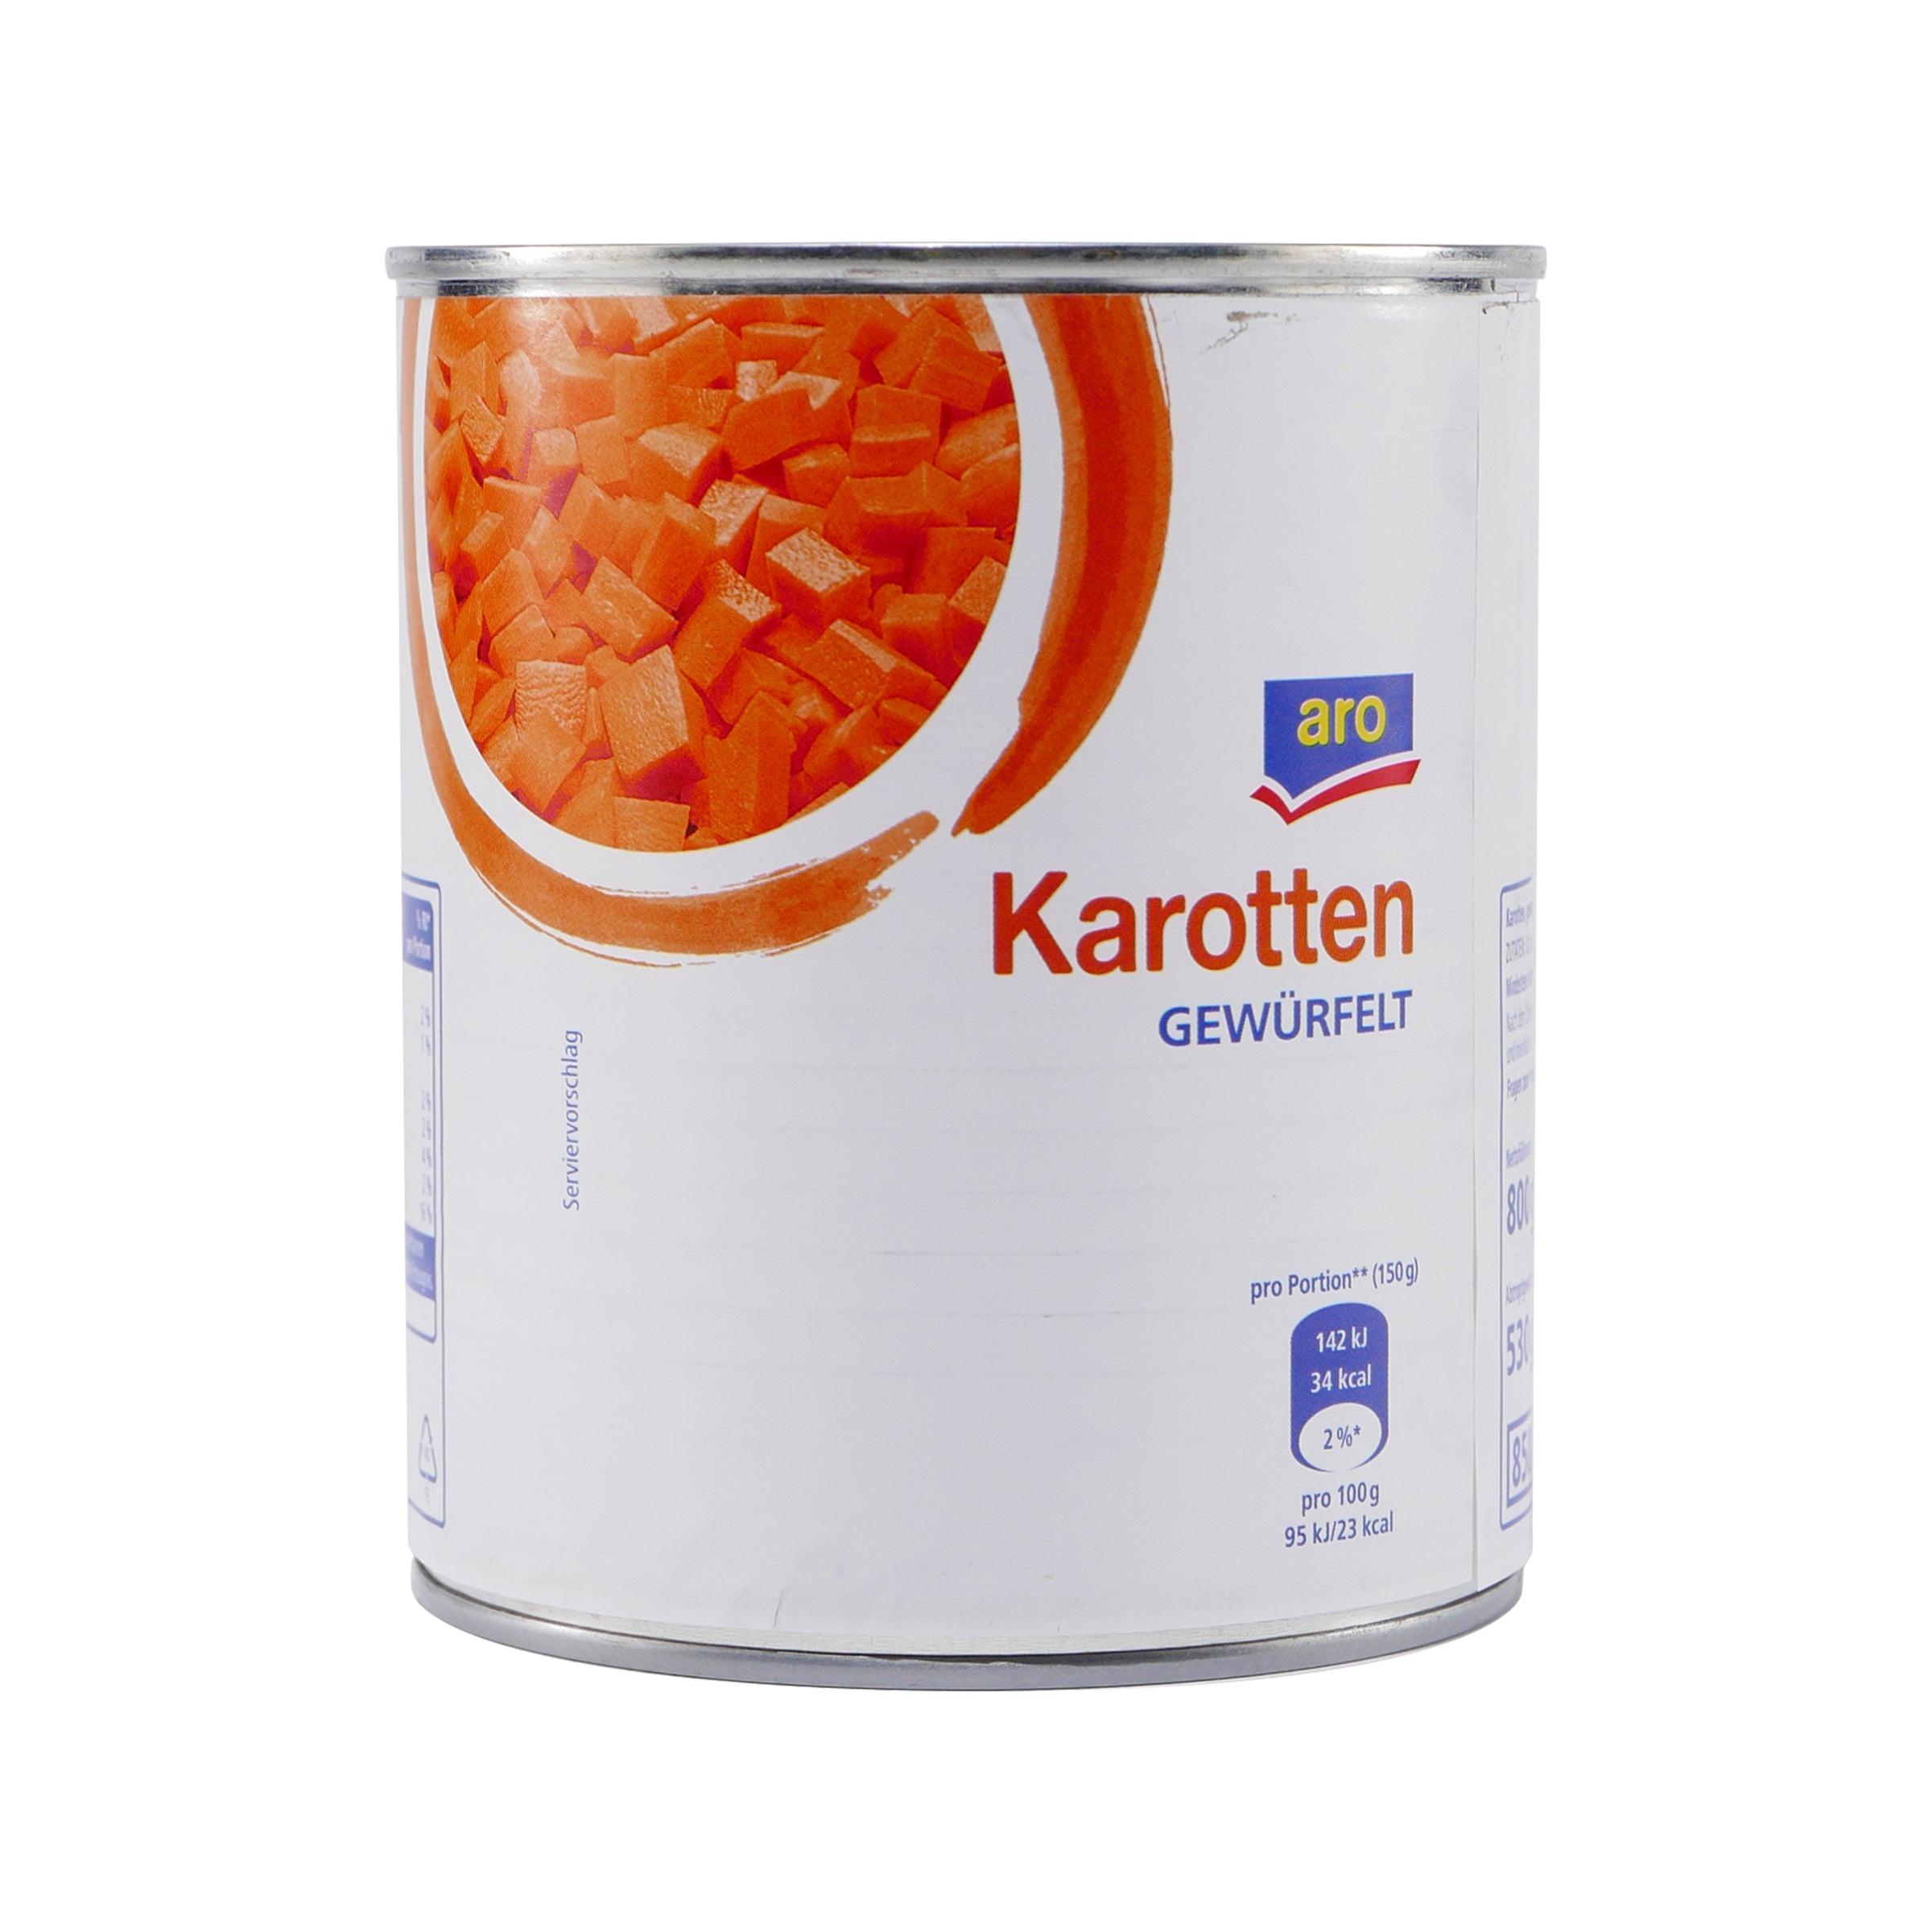 aro Karotten -gewürfelt- (12 x 800g)